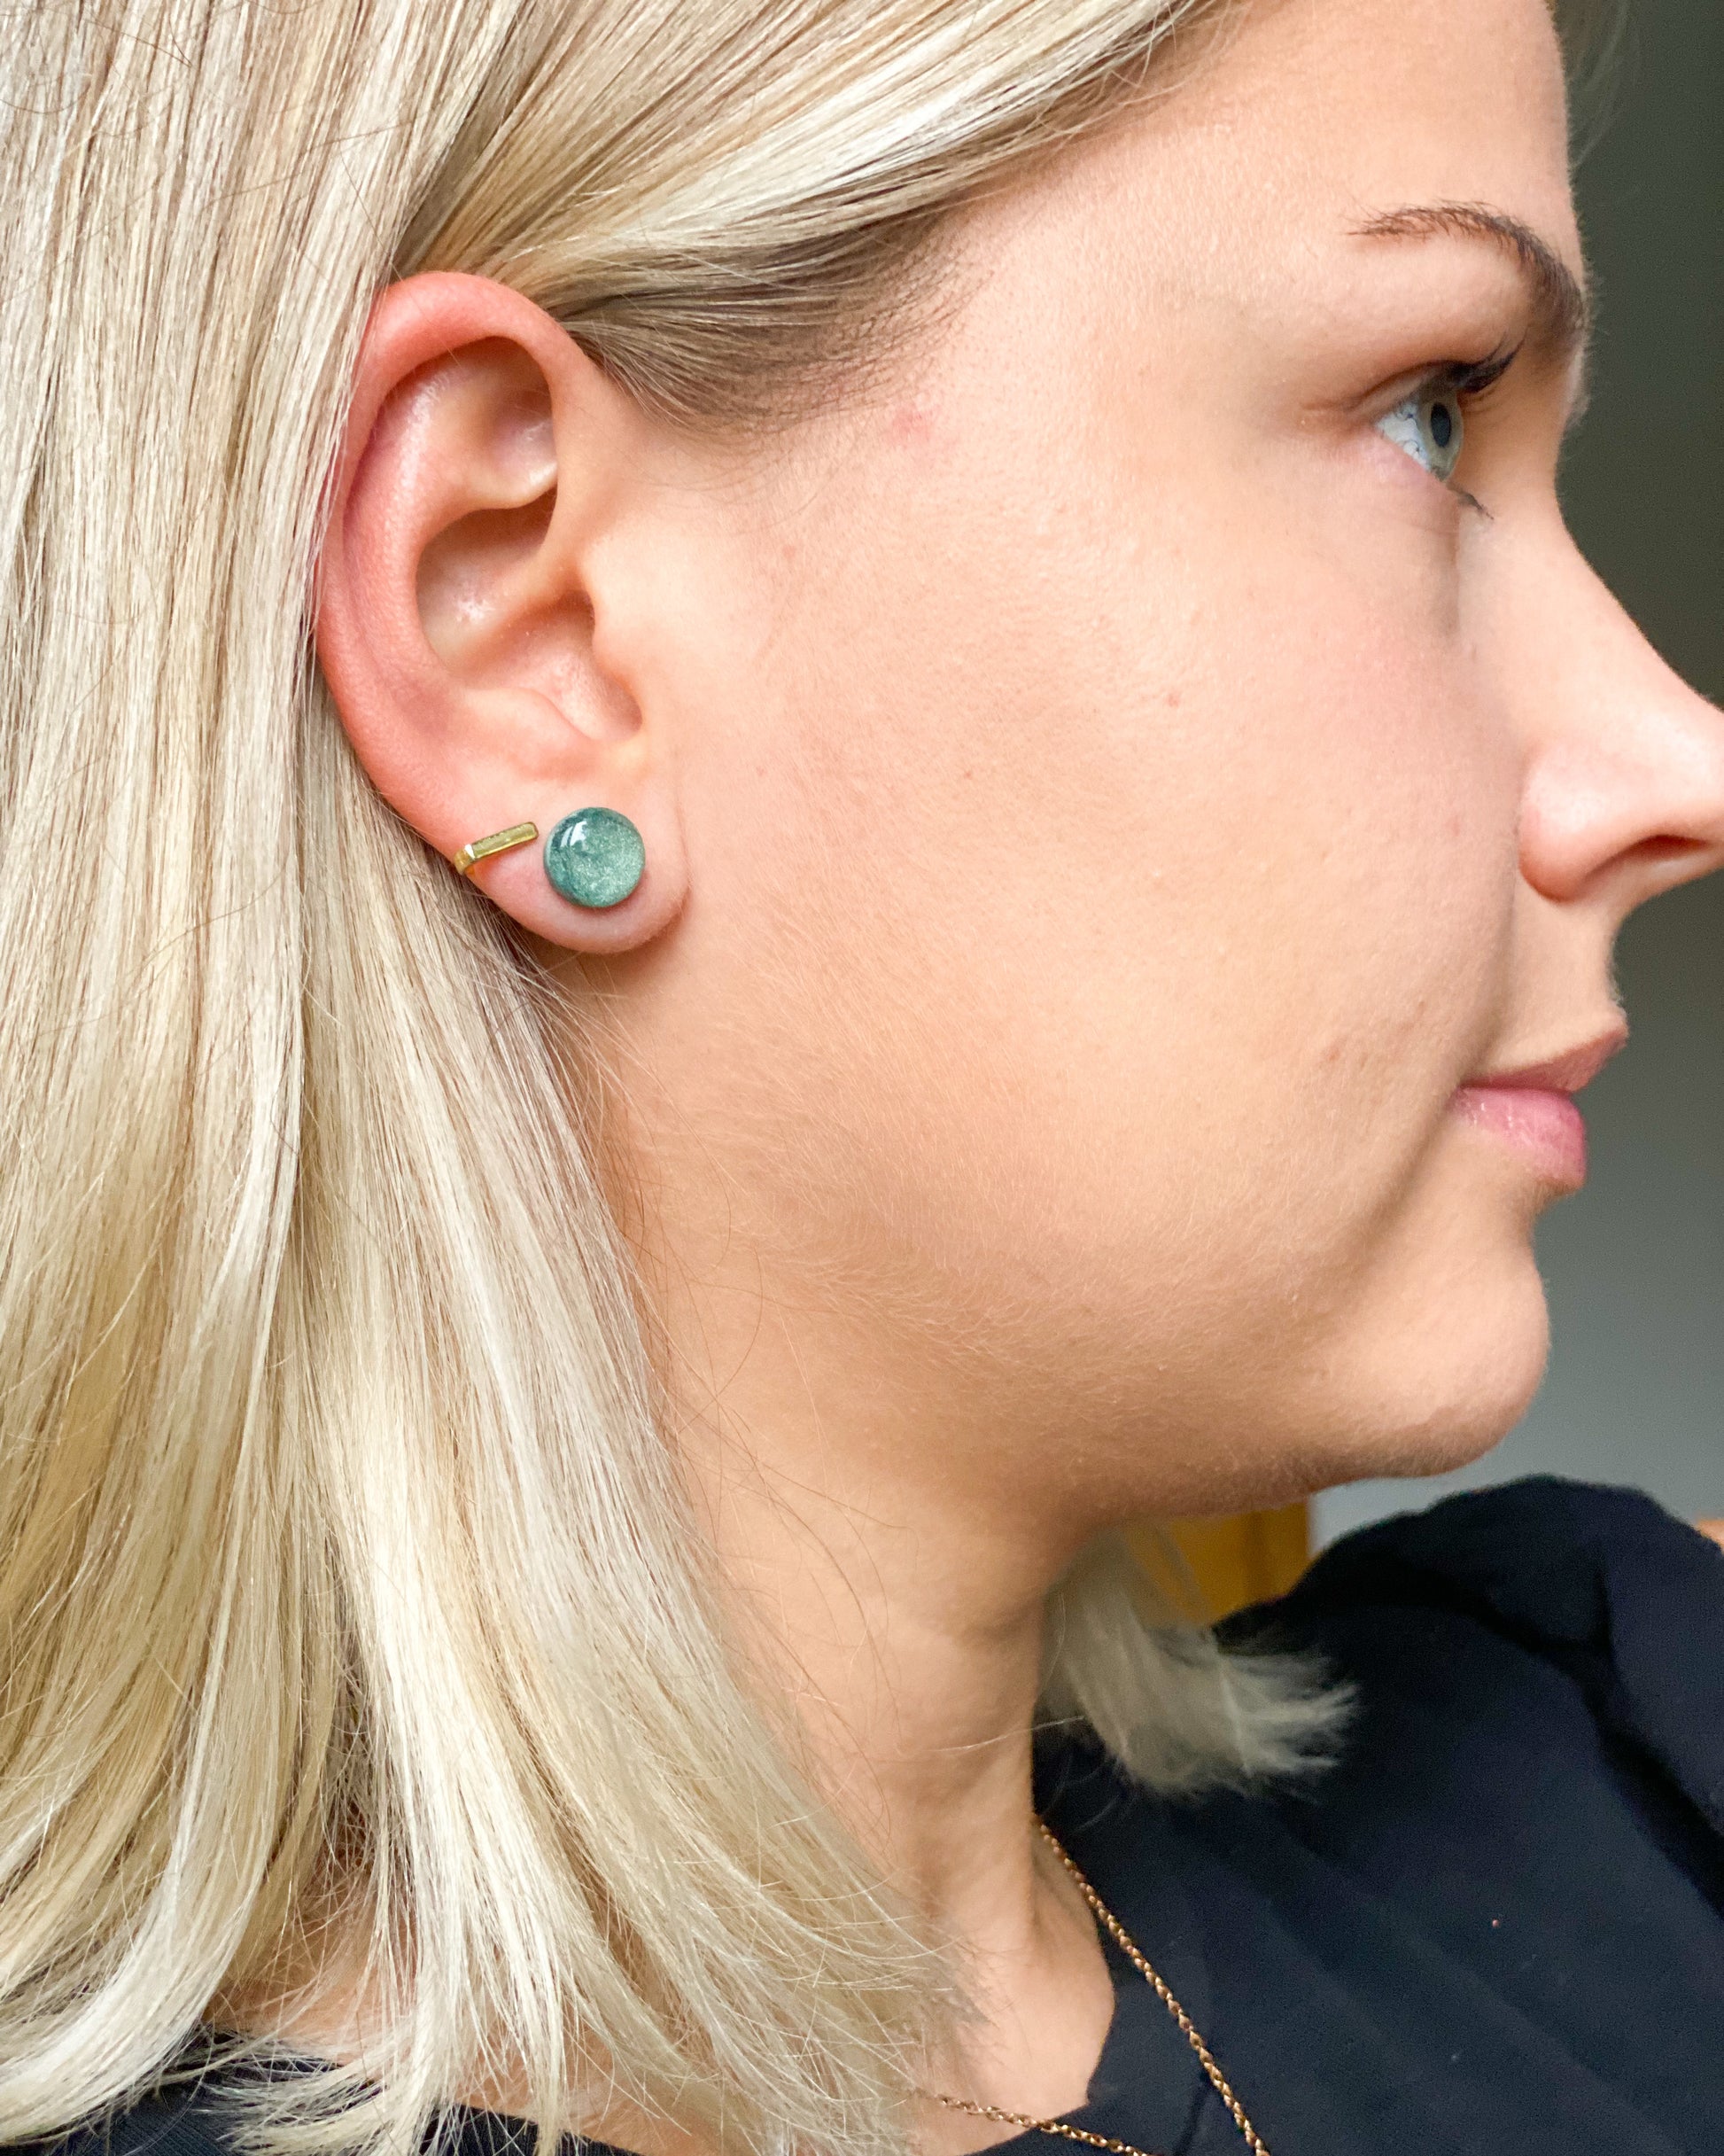 Green stellar stud earrings freeshipping - Ollijewelry